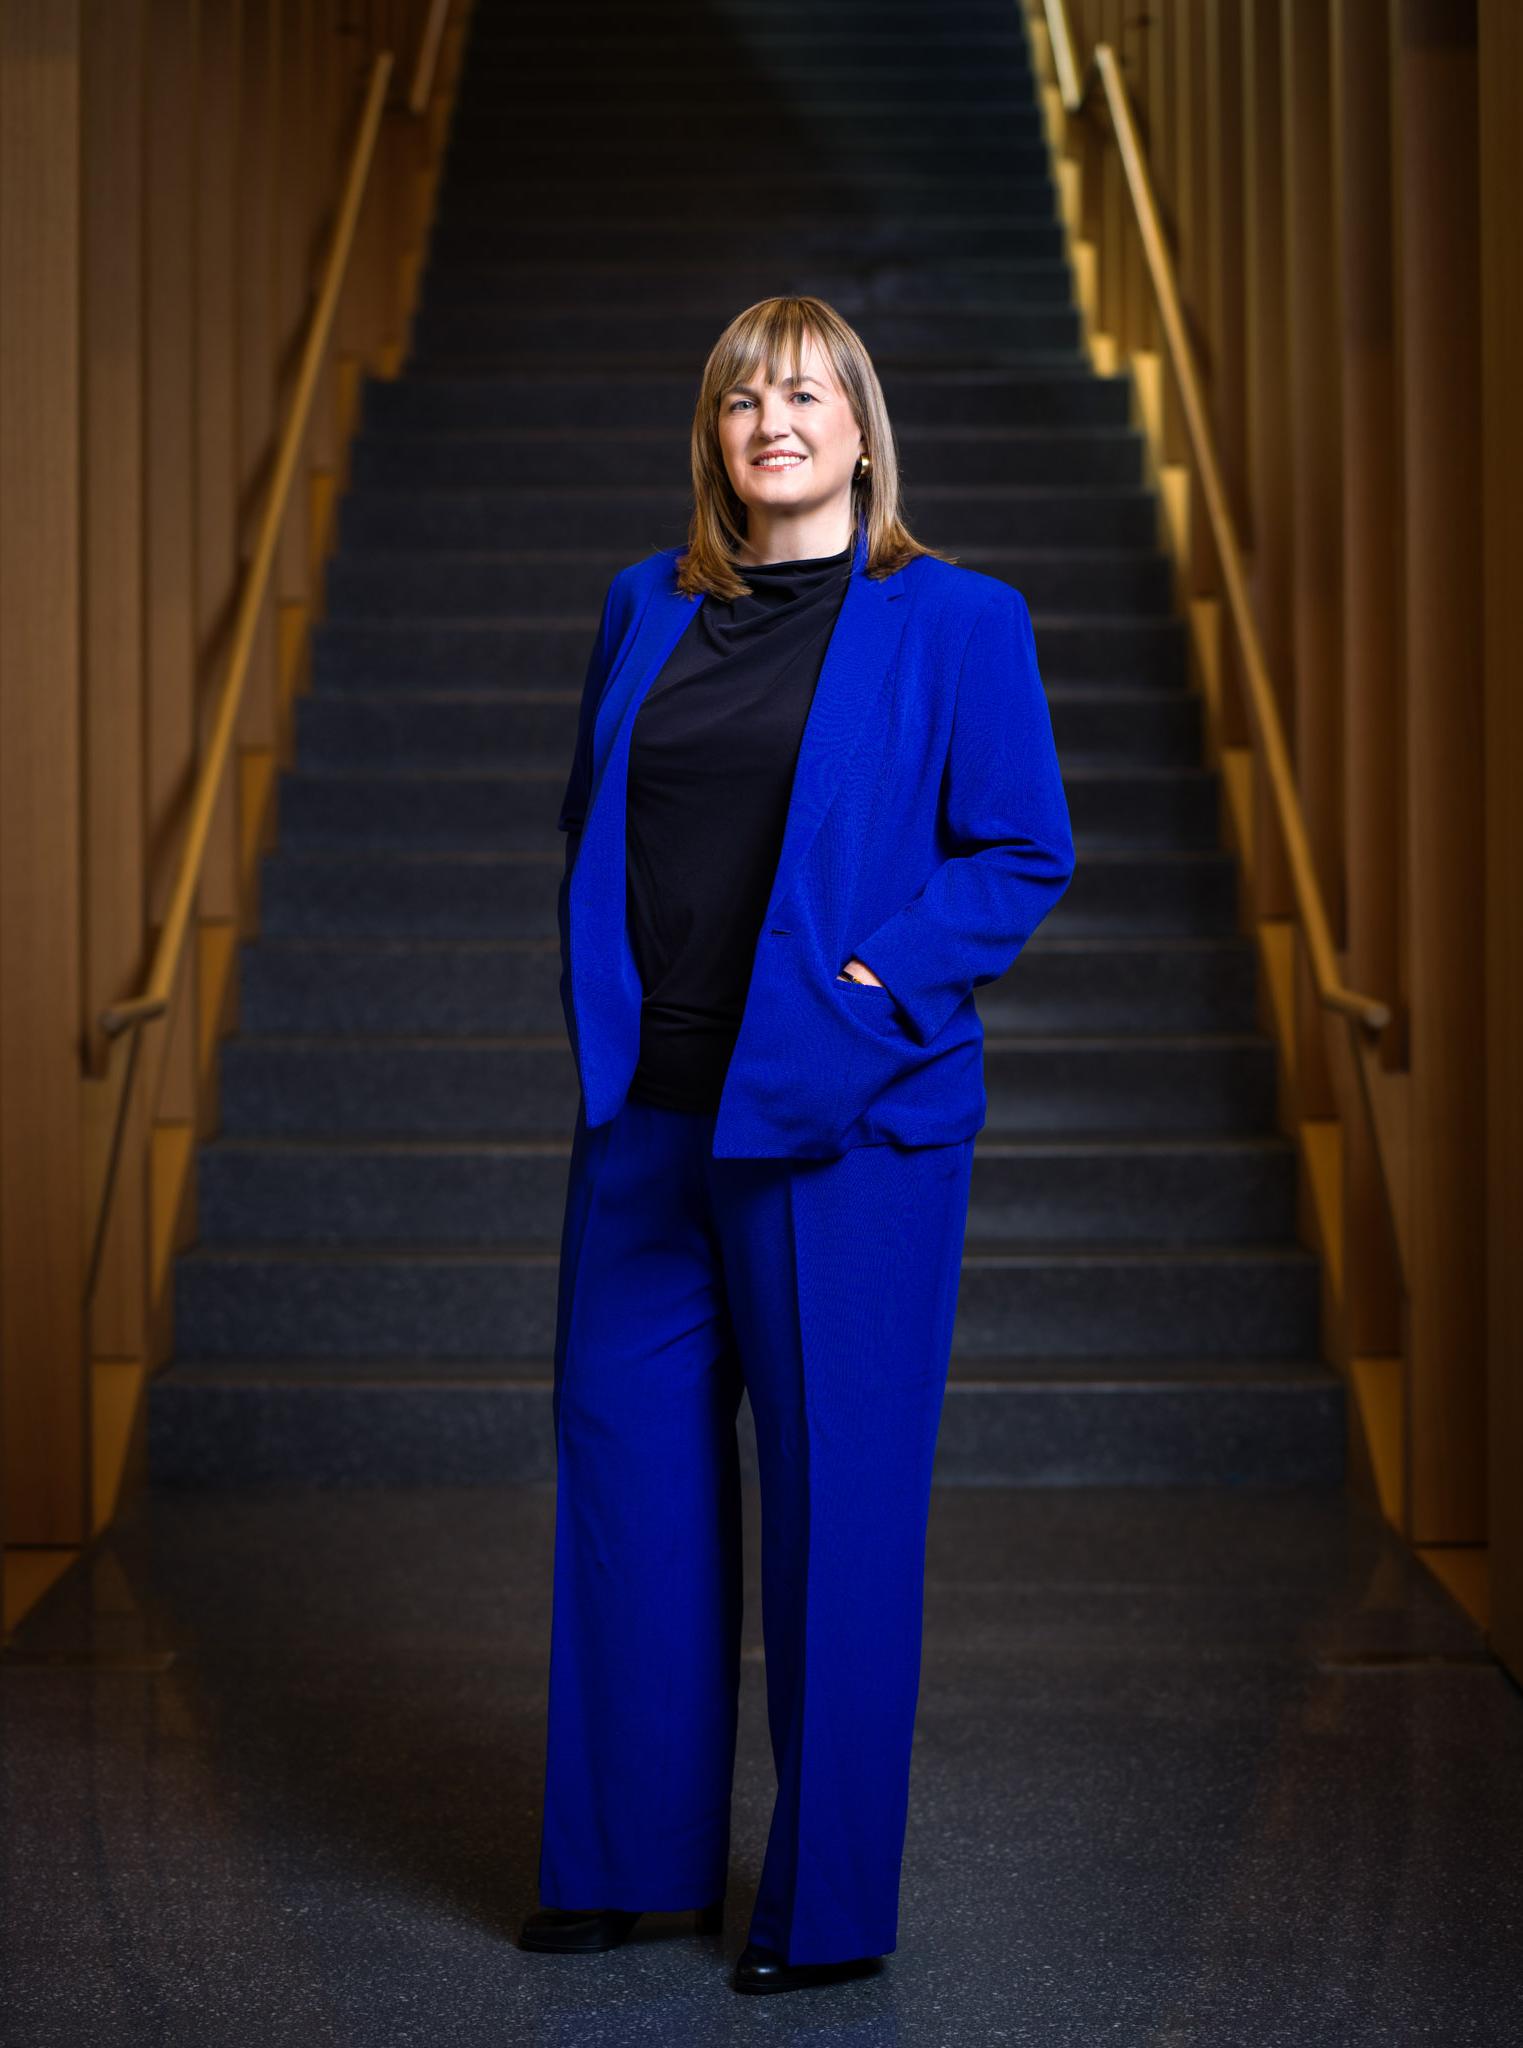 劳拉·罗森伯里总统站在米尔斯坦大楼的楼梯前. She is wearing a blue suit